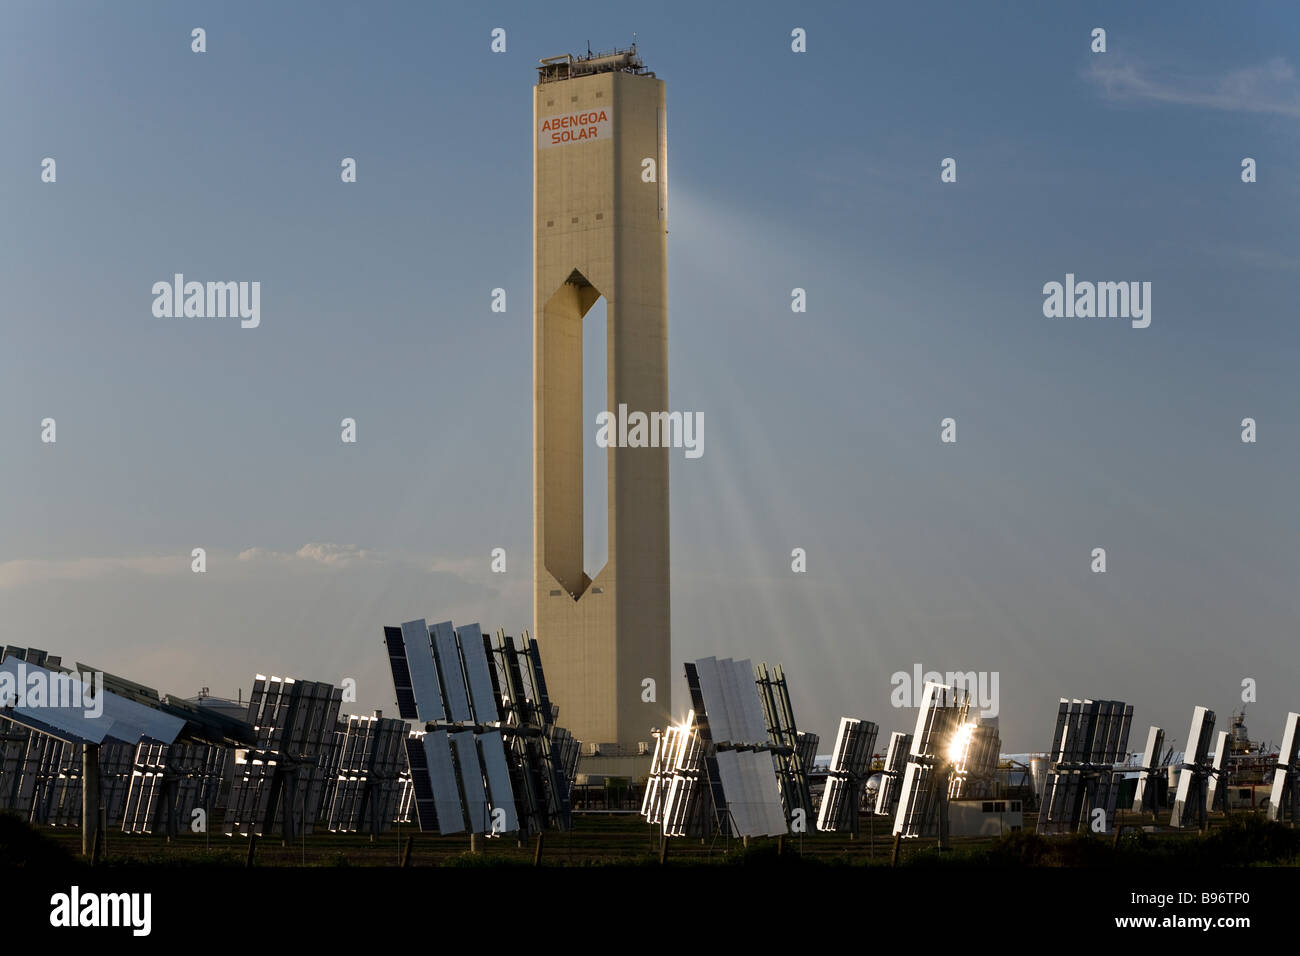 Projet de centrale électrique solaire Abengoa, près de Séville. L'Espagne. Banque D'Images